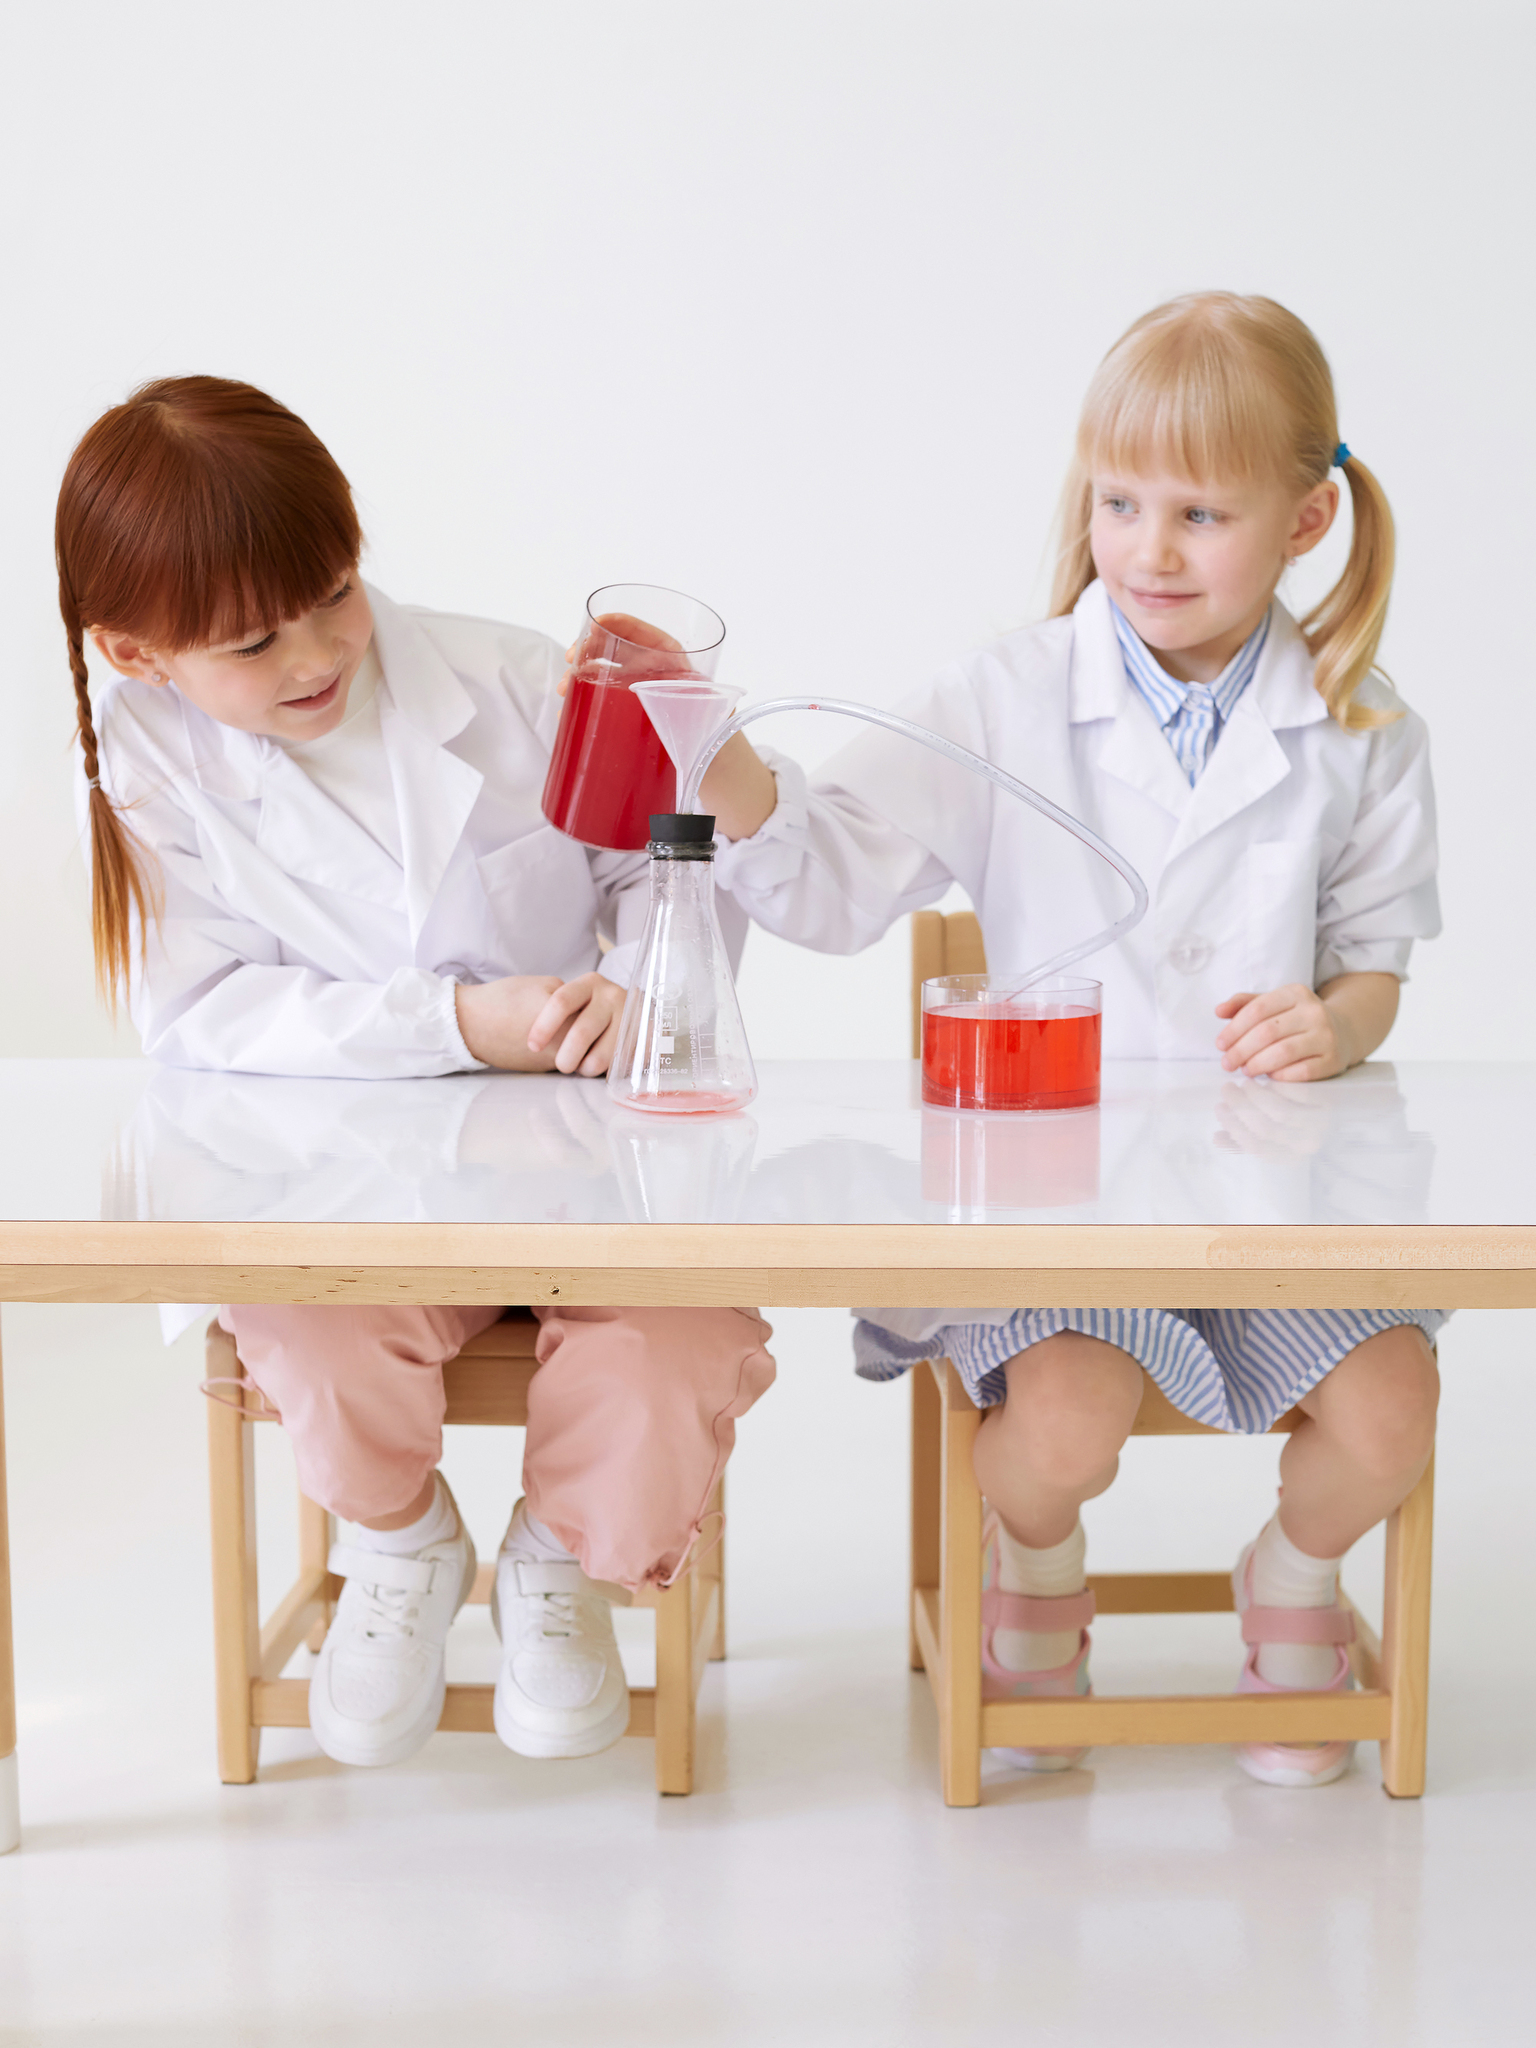 УМК для естественно-научного образования детей 4-5 лет / 2 мобильных стеллажа с оборудованием по 4 направлениям исследований